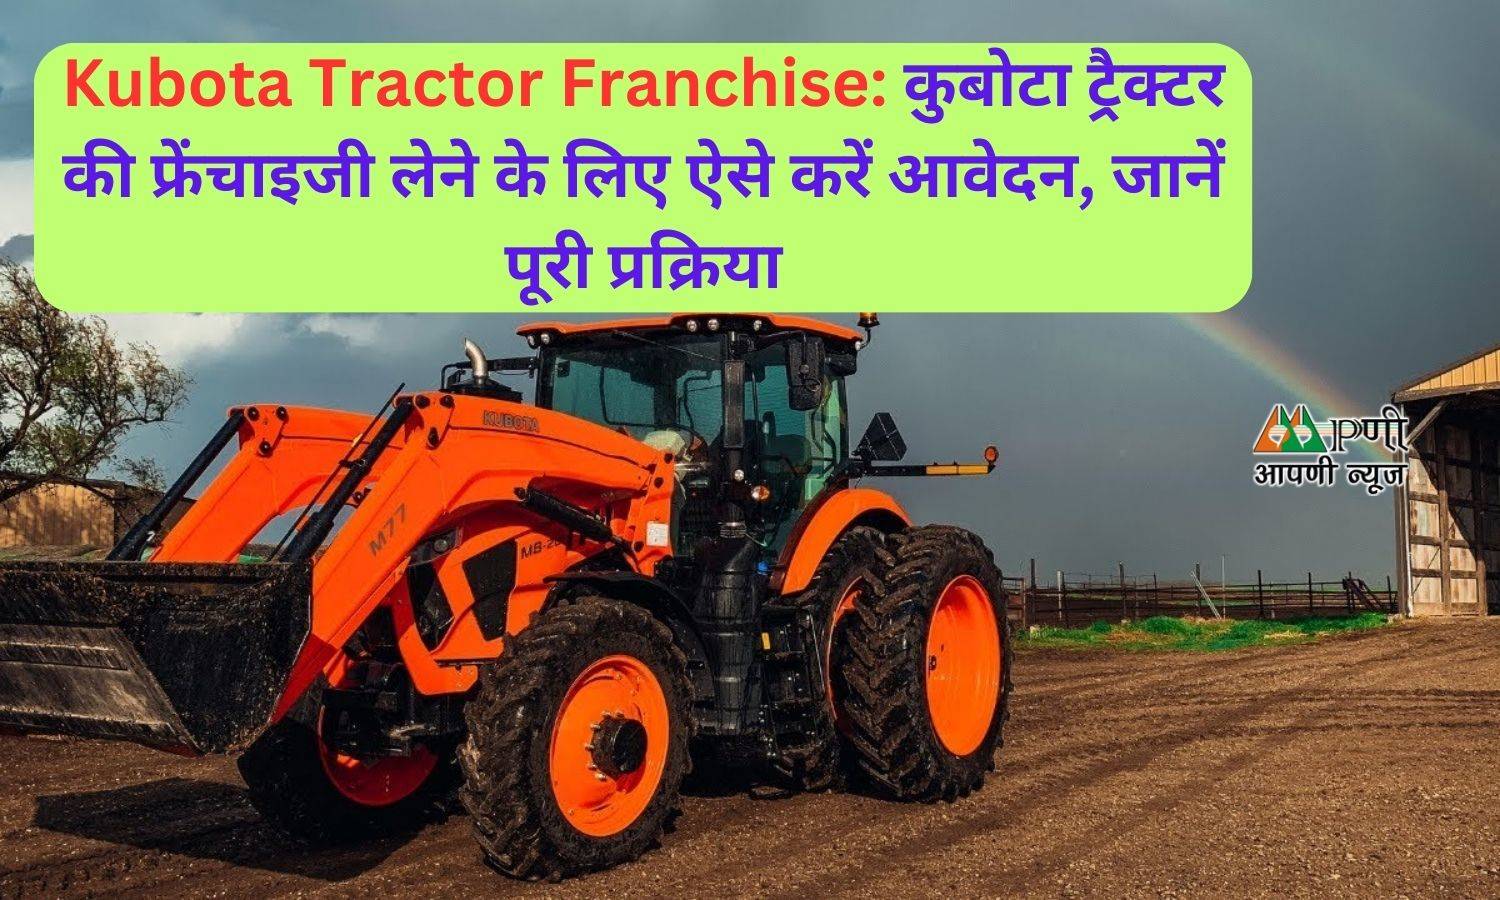 Kubota Tractor Franchise: कुबोटा ट्रैक्टर की फ्रेंचाइजी लेने के लिए ऐसे करें आवेदन, जानें पूरी प्रक्रिया